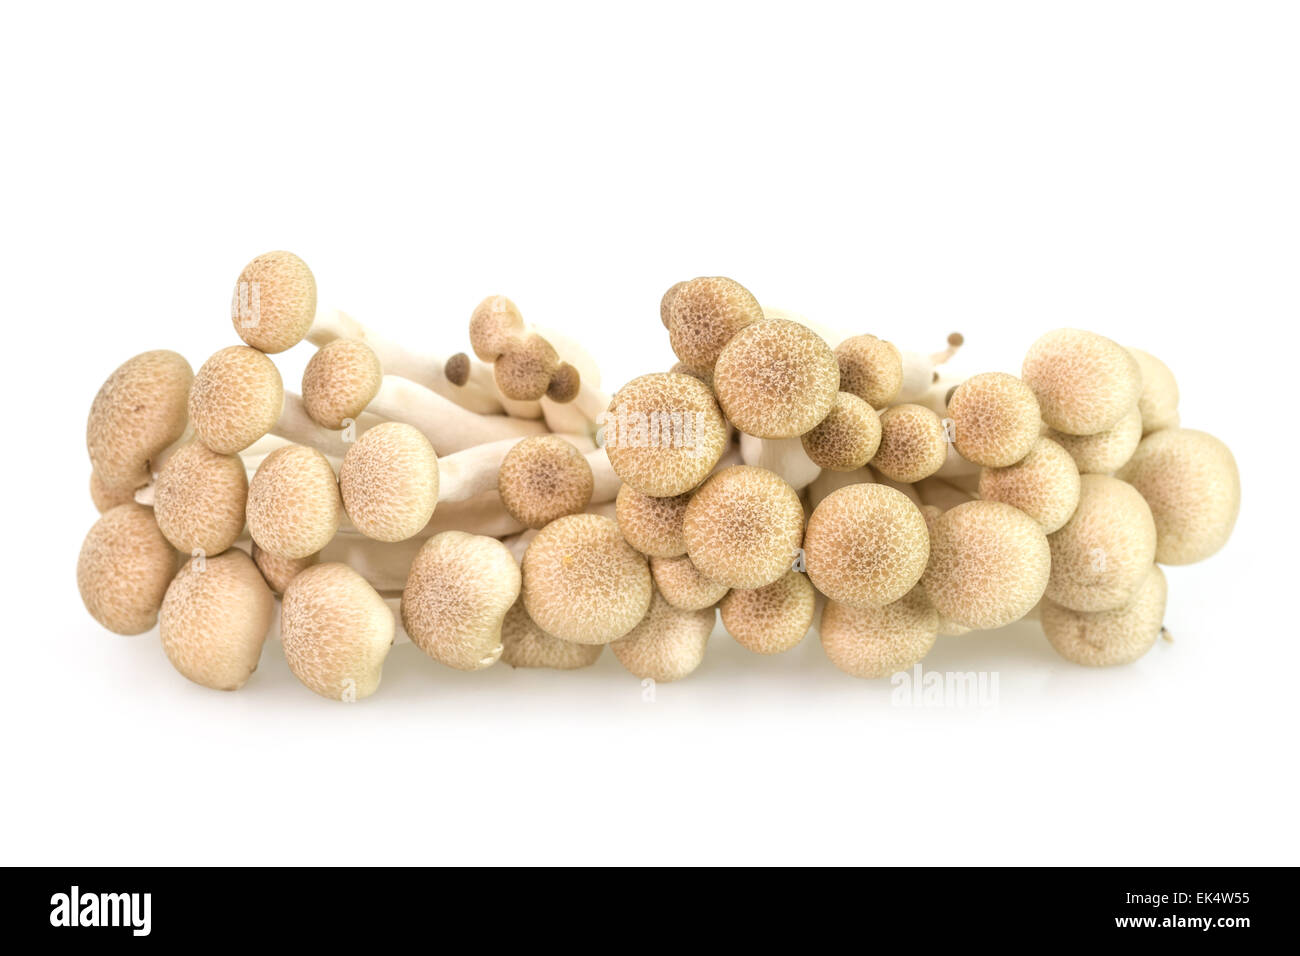 Marrone di funghi di faggio o funghi shimeji isolati su sfondo bianco Foto Stock